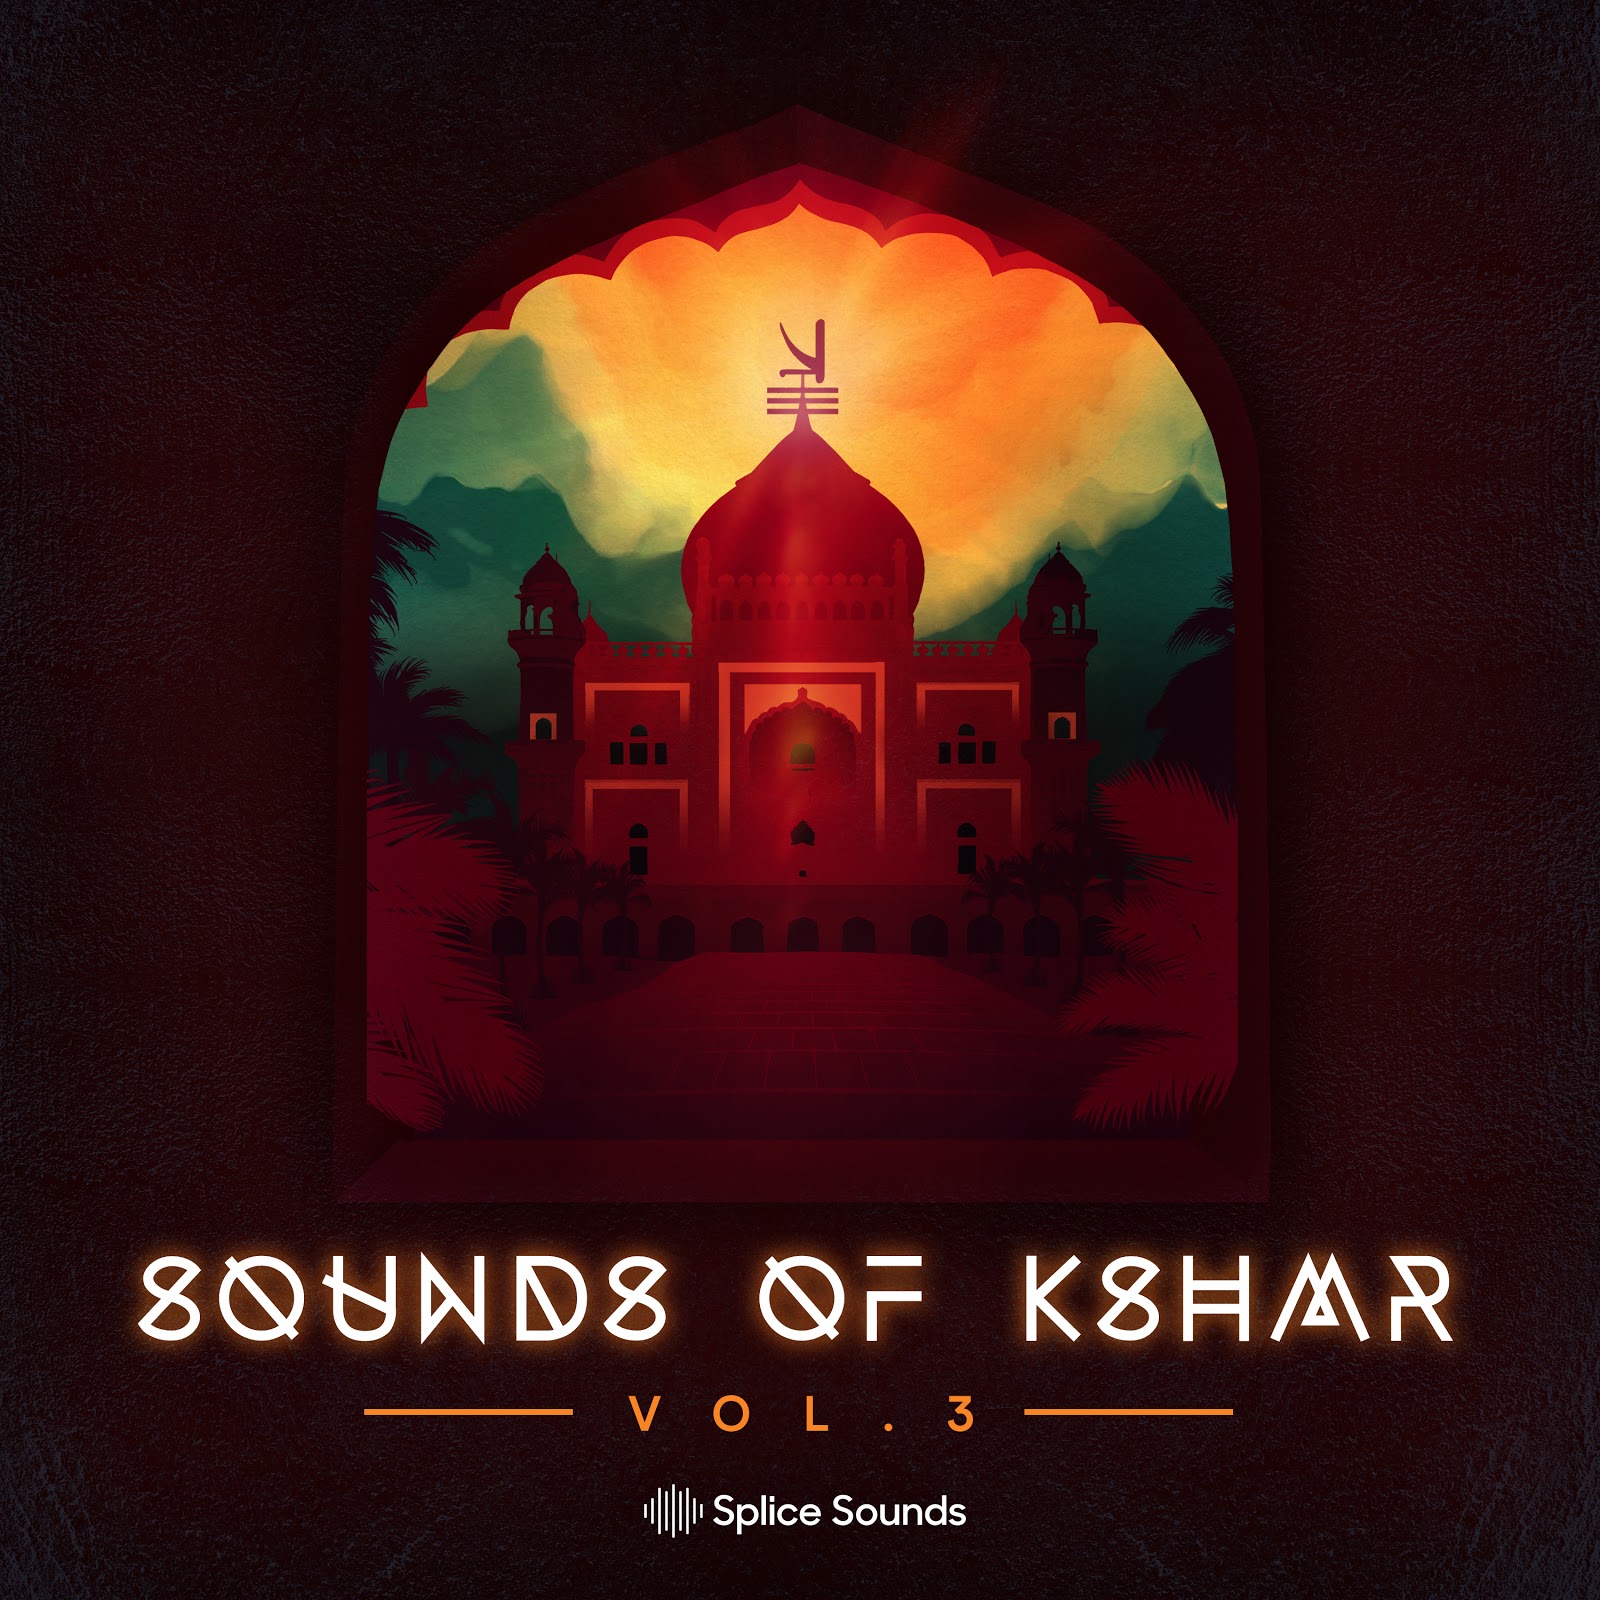 KSHMR Releases Brand-New Sample Pack on Splice, “Sounds of KSHMR Vol. 3”